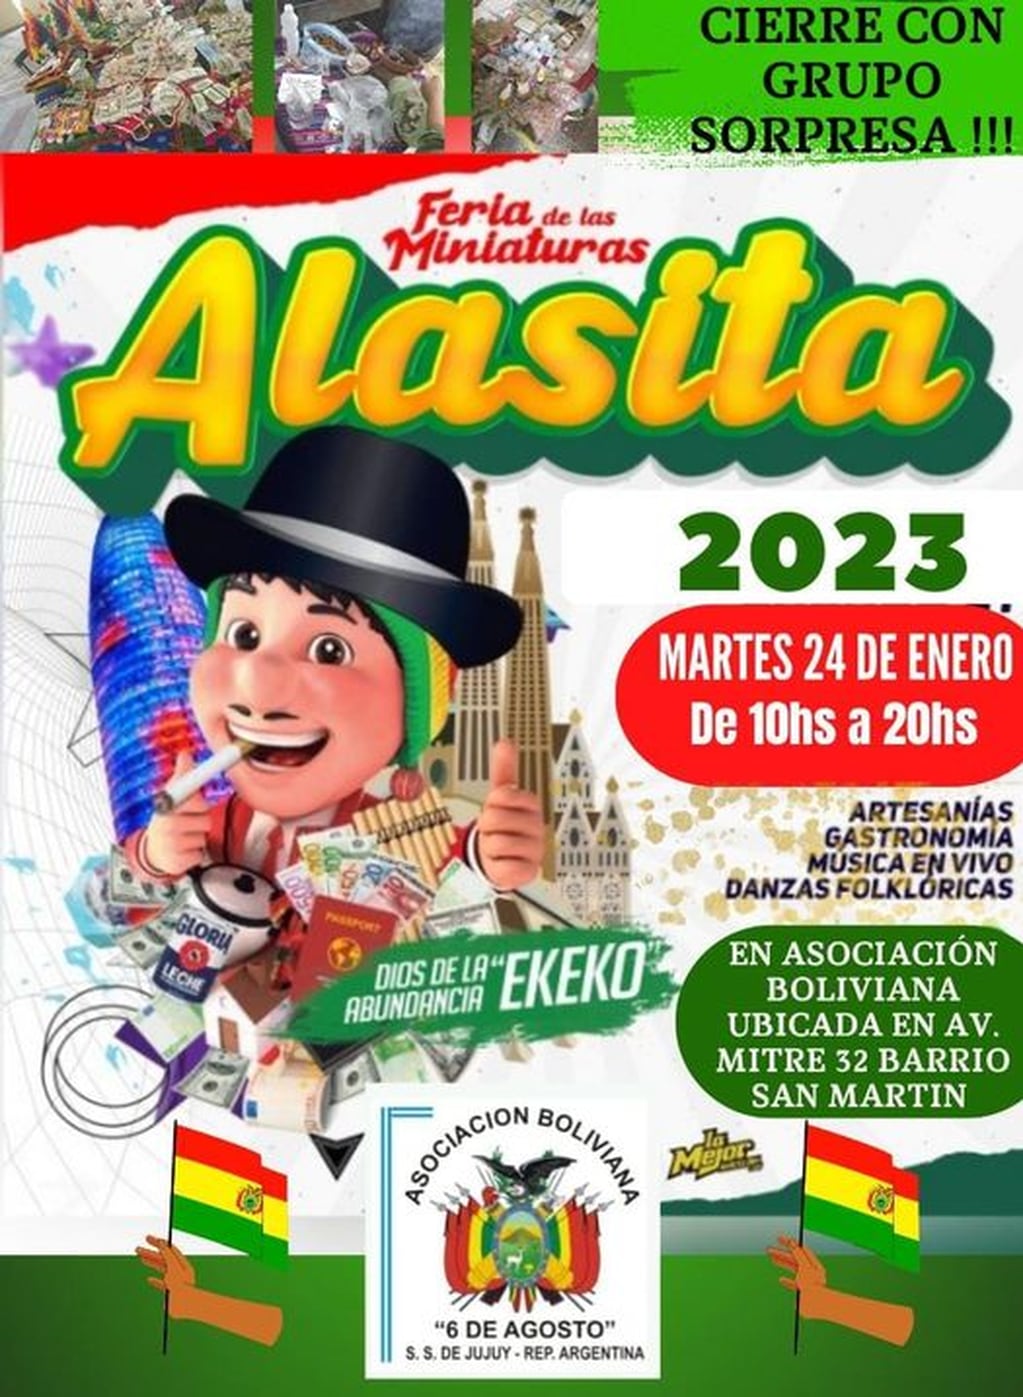 Pieza gráfica que circula por redes sociales, invitando a la celebración de la Alasita organizada para este martes en San Salvador de Jujuy por la Asociación Boliviana local.